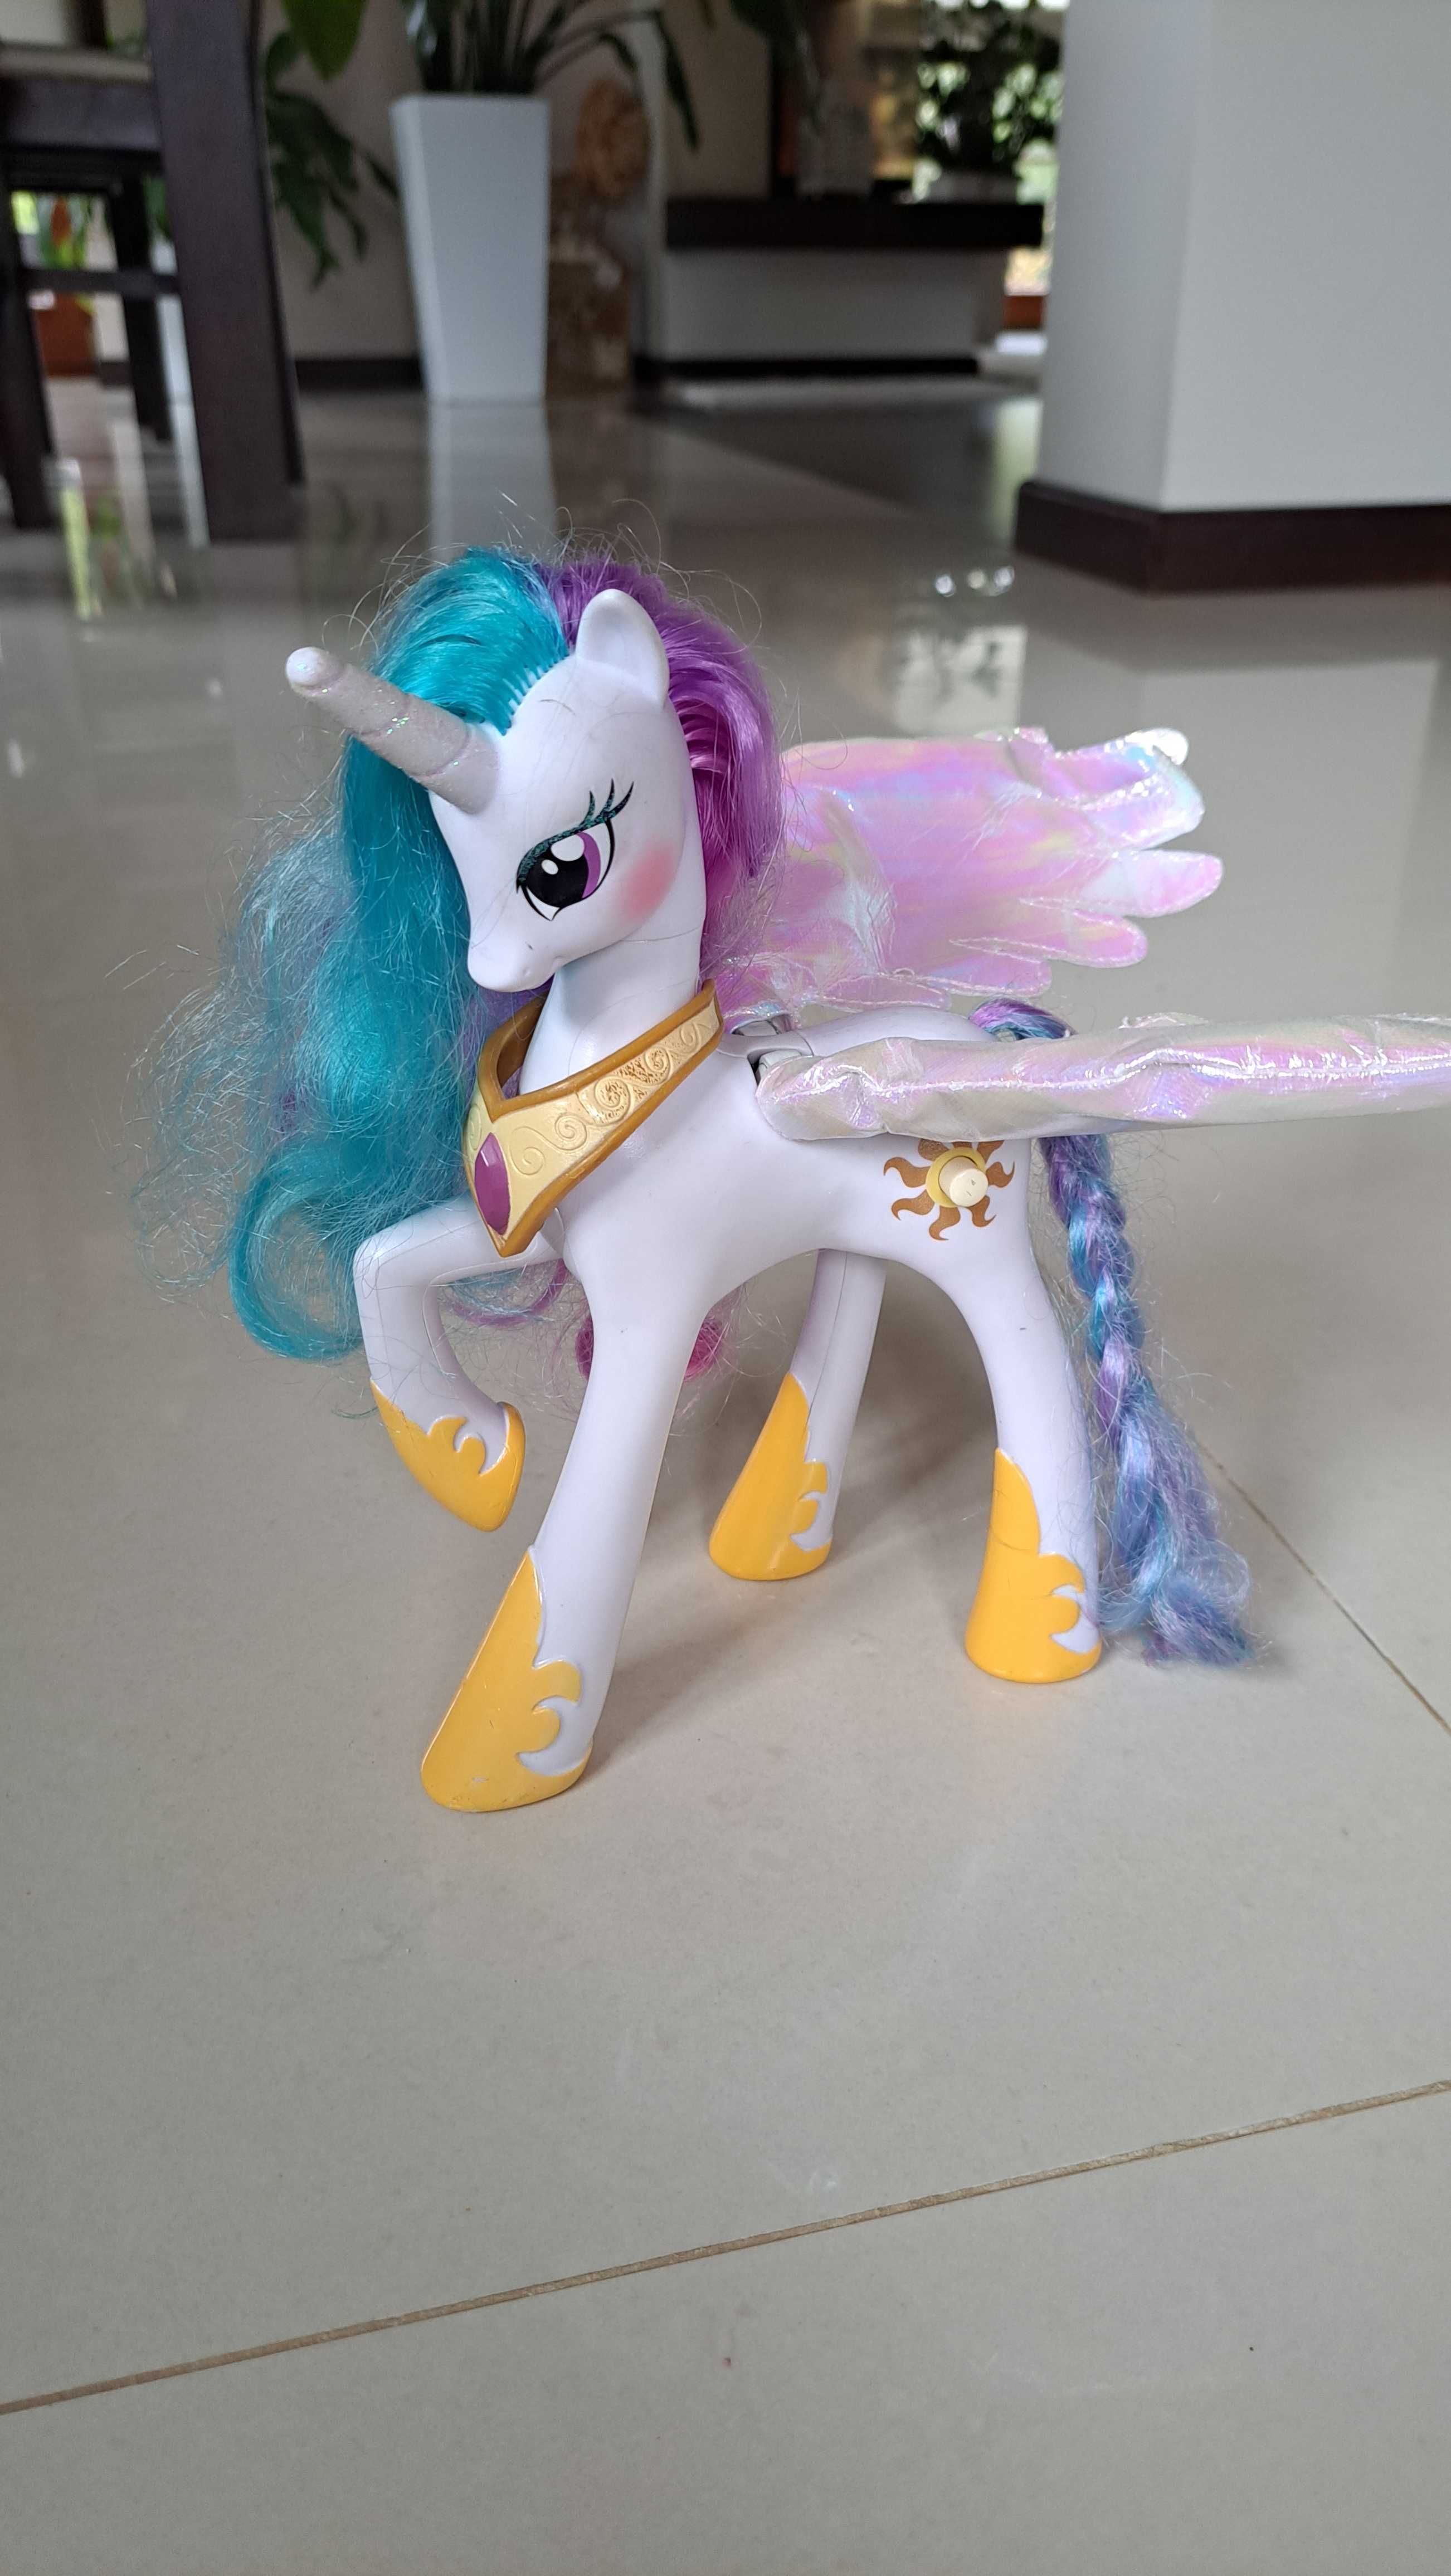 Zabawka Konik My Little Pony księżniczka Celestia mówiący konik.